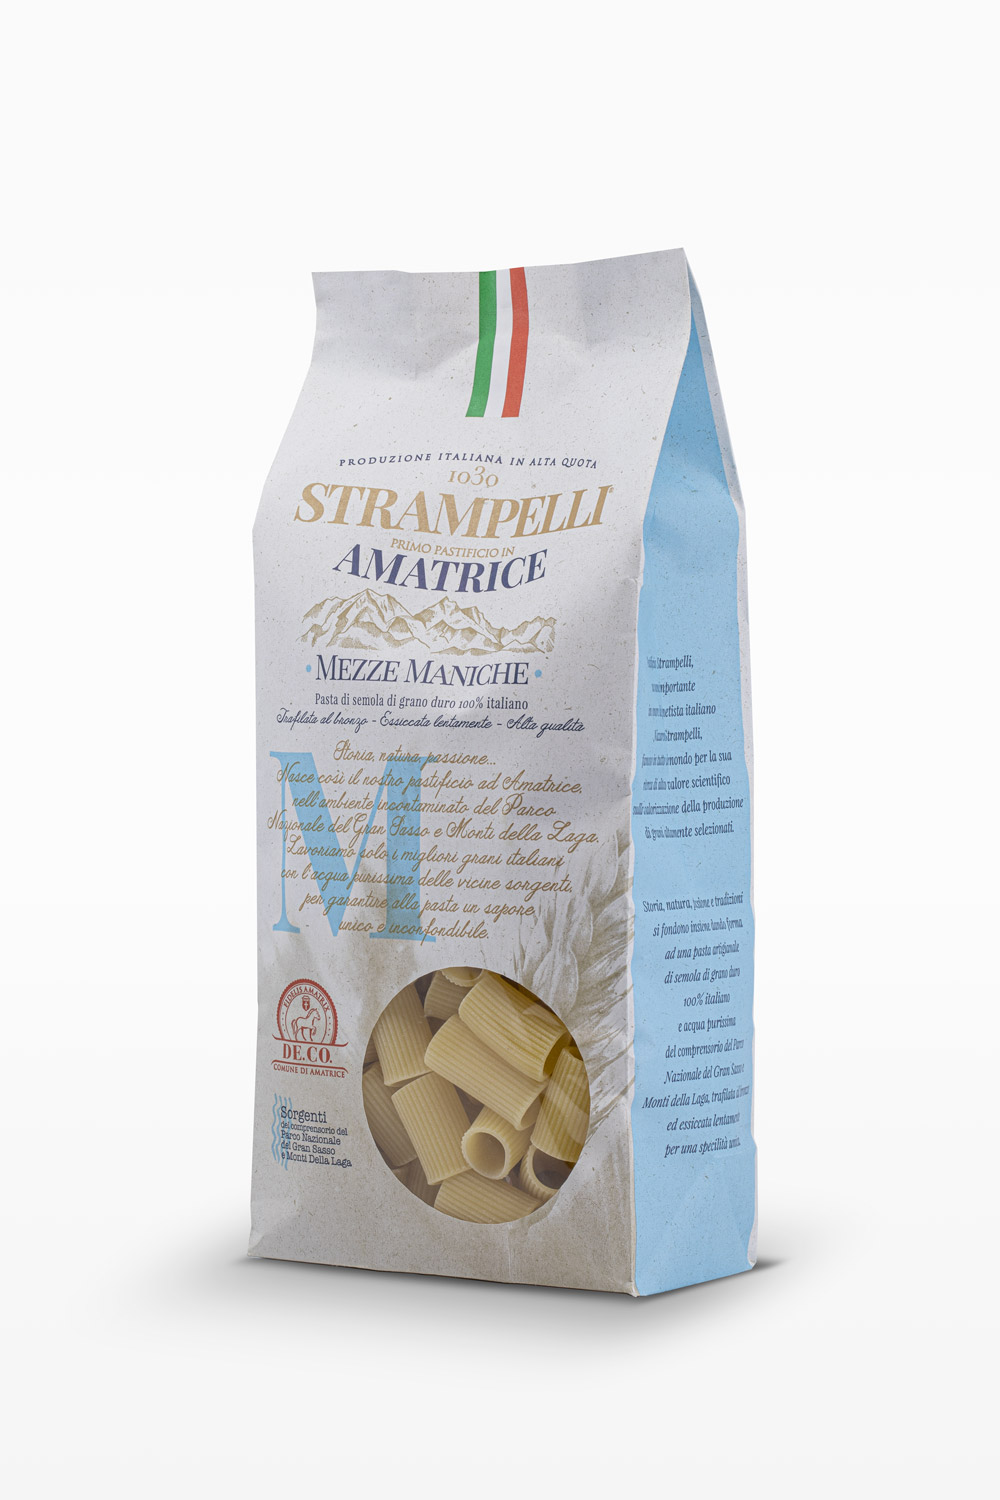 Mezze maniche - Pasta di semola di grano duro, ruvida e porosa, grano 100% italiano, essiccazione lenta a bassa temperatura.